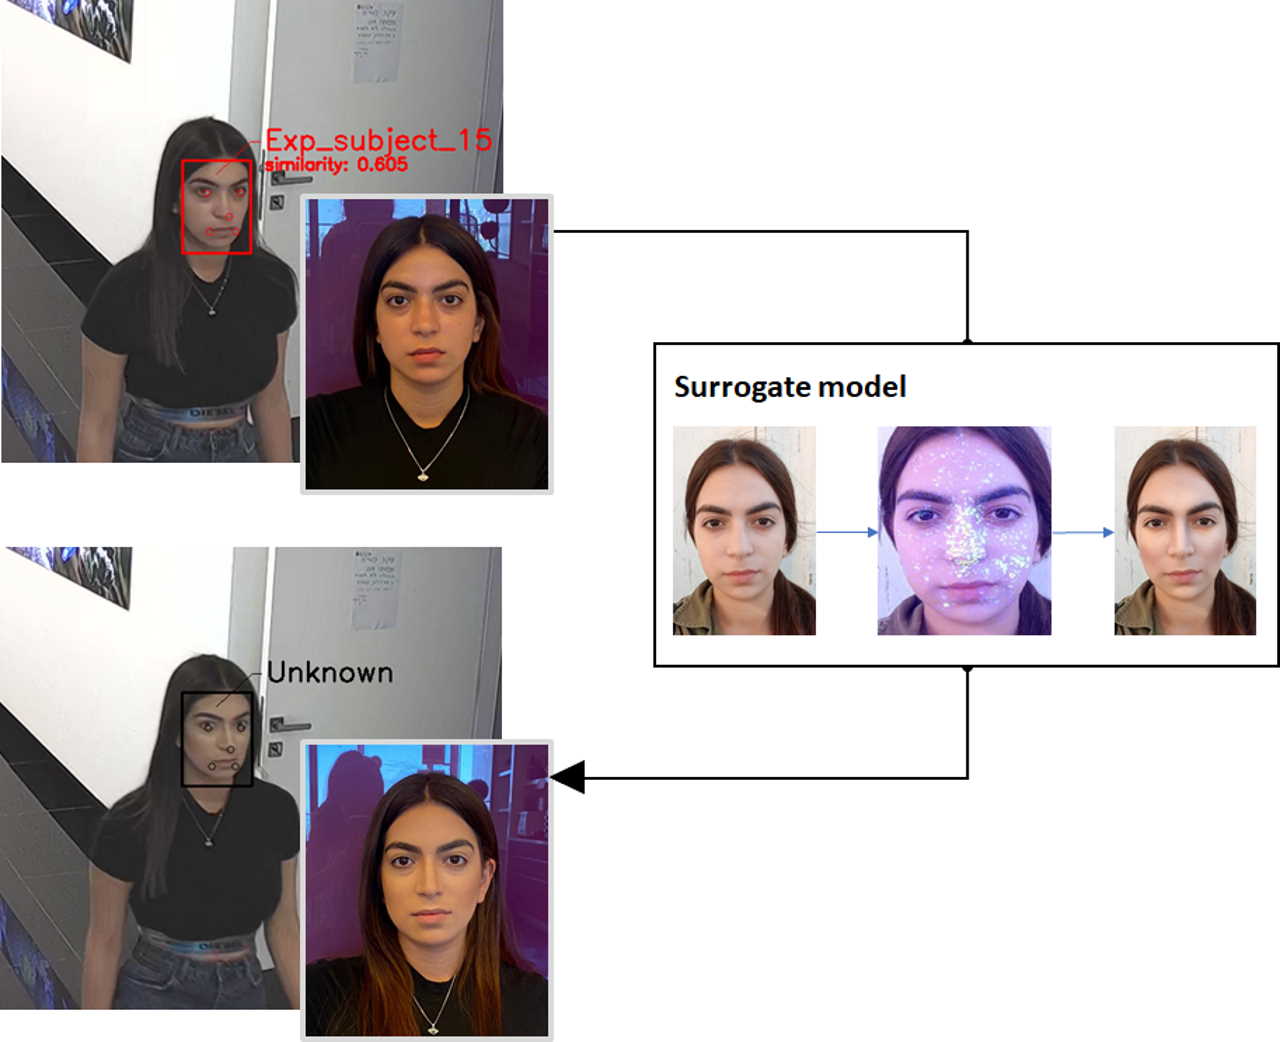 Як працює метод: нейромережа шукає визначальні риси обличчя, пропонує спосіб їхнього маскування, а затим людина вже виглядає незнайомою для системи розпізнавання. Nitzan Guetta et al.